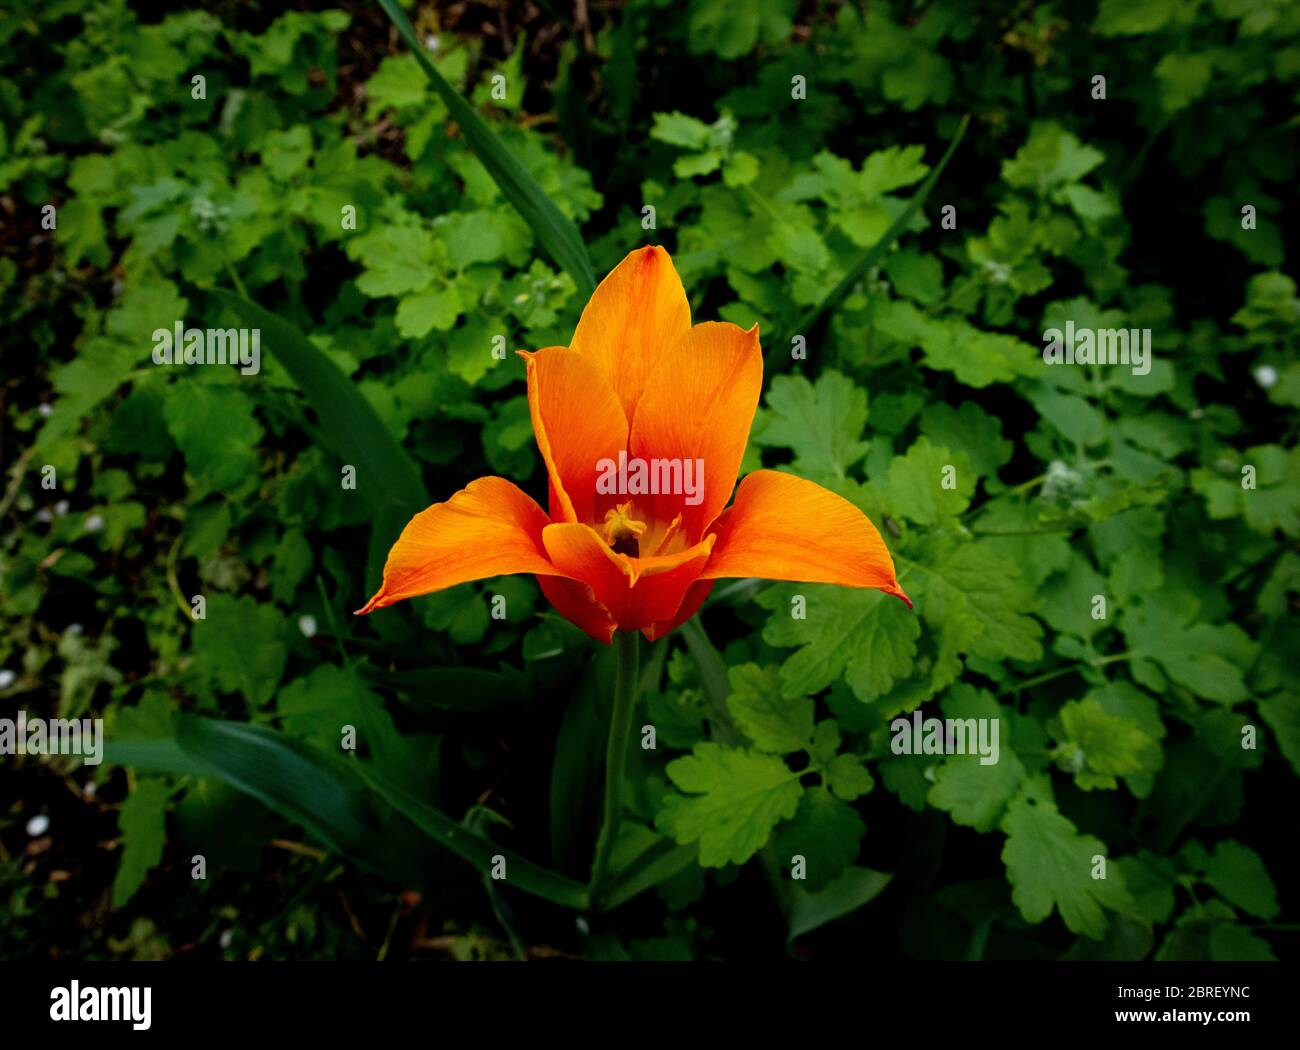 Tulipe orange sur fond vert de plantes. Les tulipes fleurissent dans le jardin. Banque D'Images